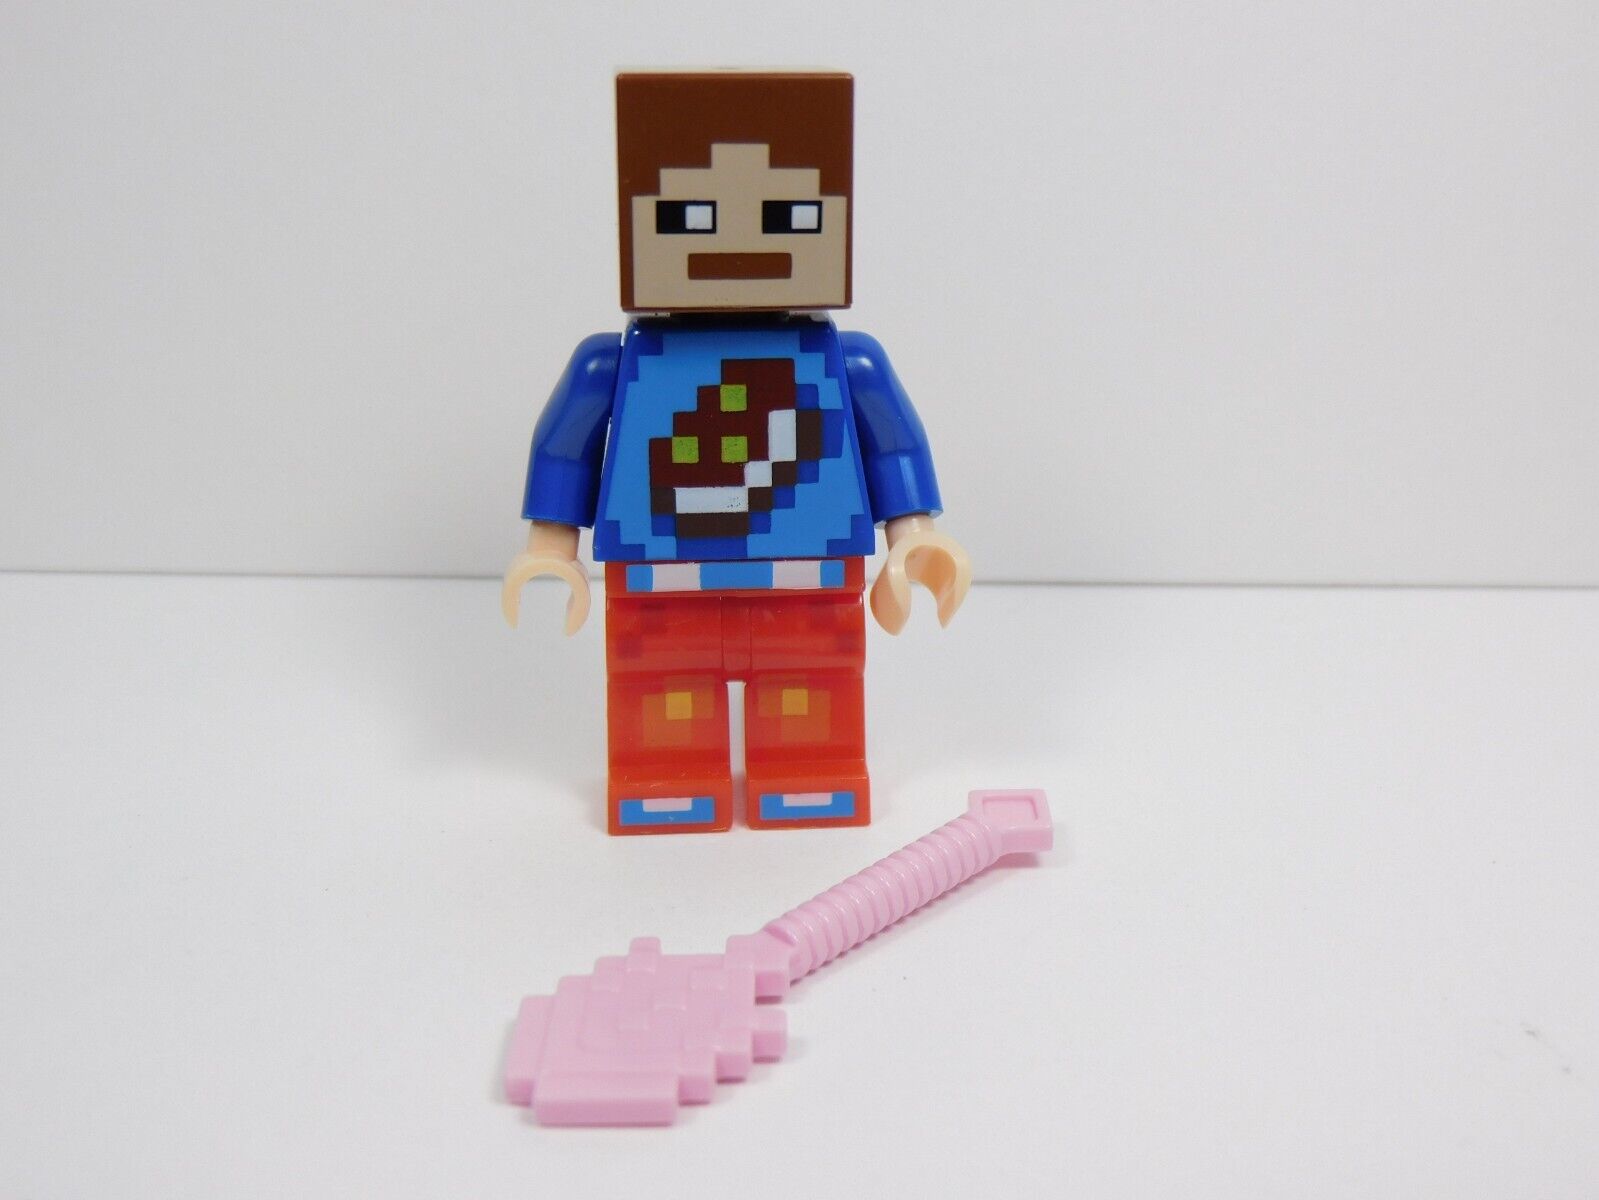 Slette Joke skuffe Figure w/ Brown Cubed Head and Pink Shovel Compatible Brick JJ | eBay